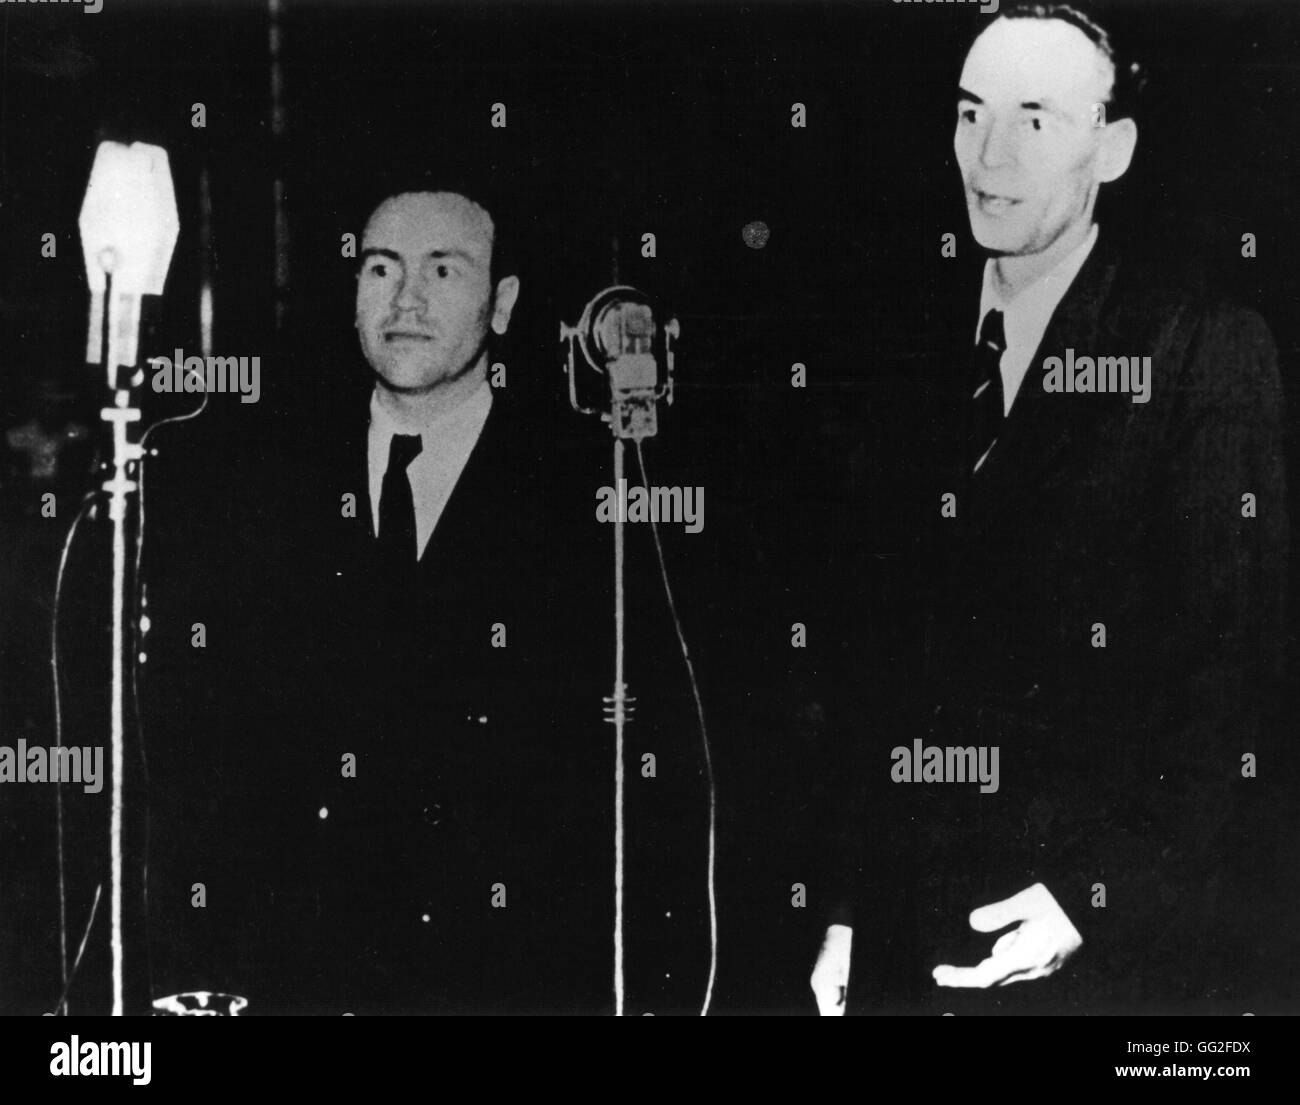 Testversion von Laszlo Rajk (nach rechts), Ministerpräsident Ungarns. 1949 aufgeladen mit "Titism" und Spionage in Budapest, er bekannte sich schuldig und wurde hingerichtet. Stockfoto